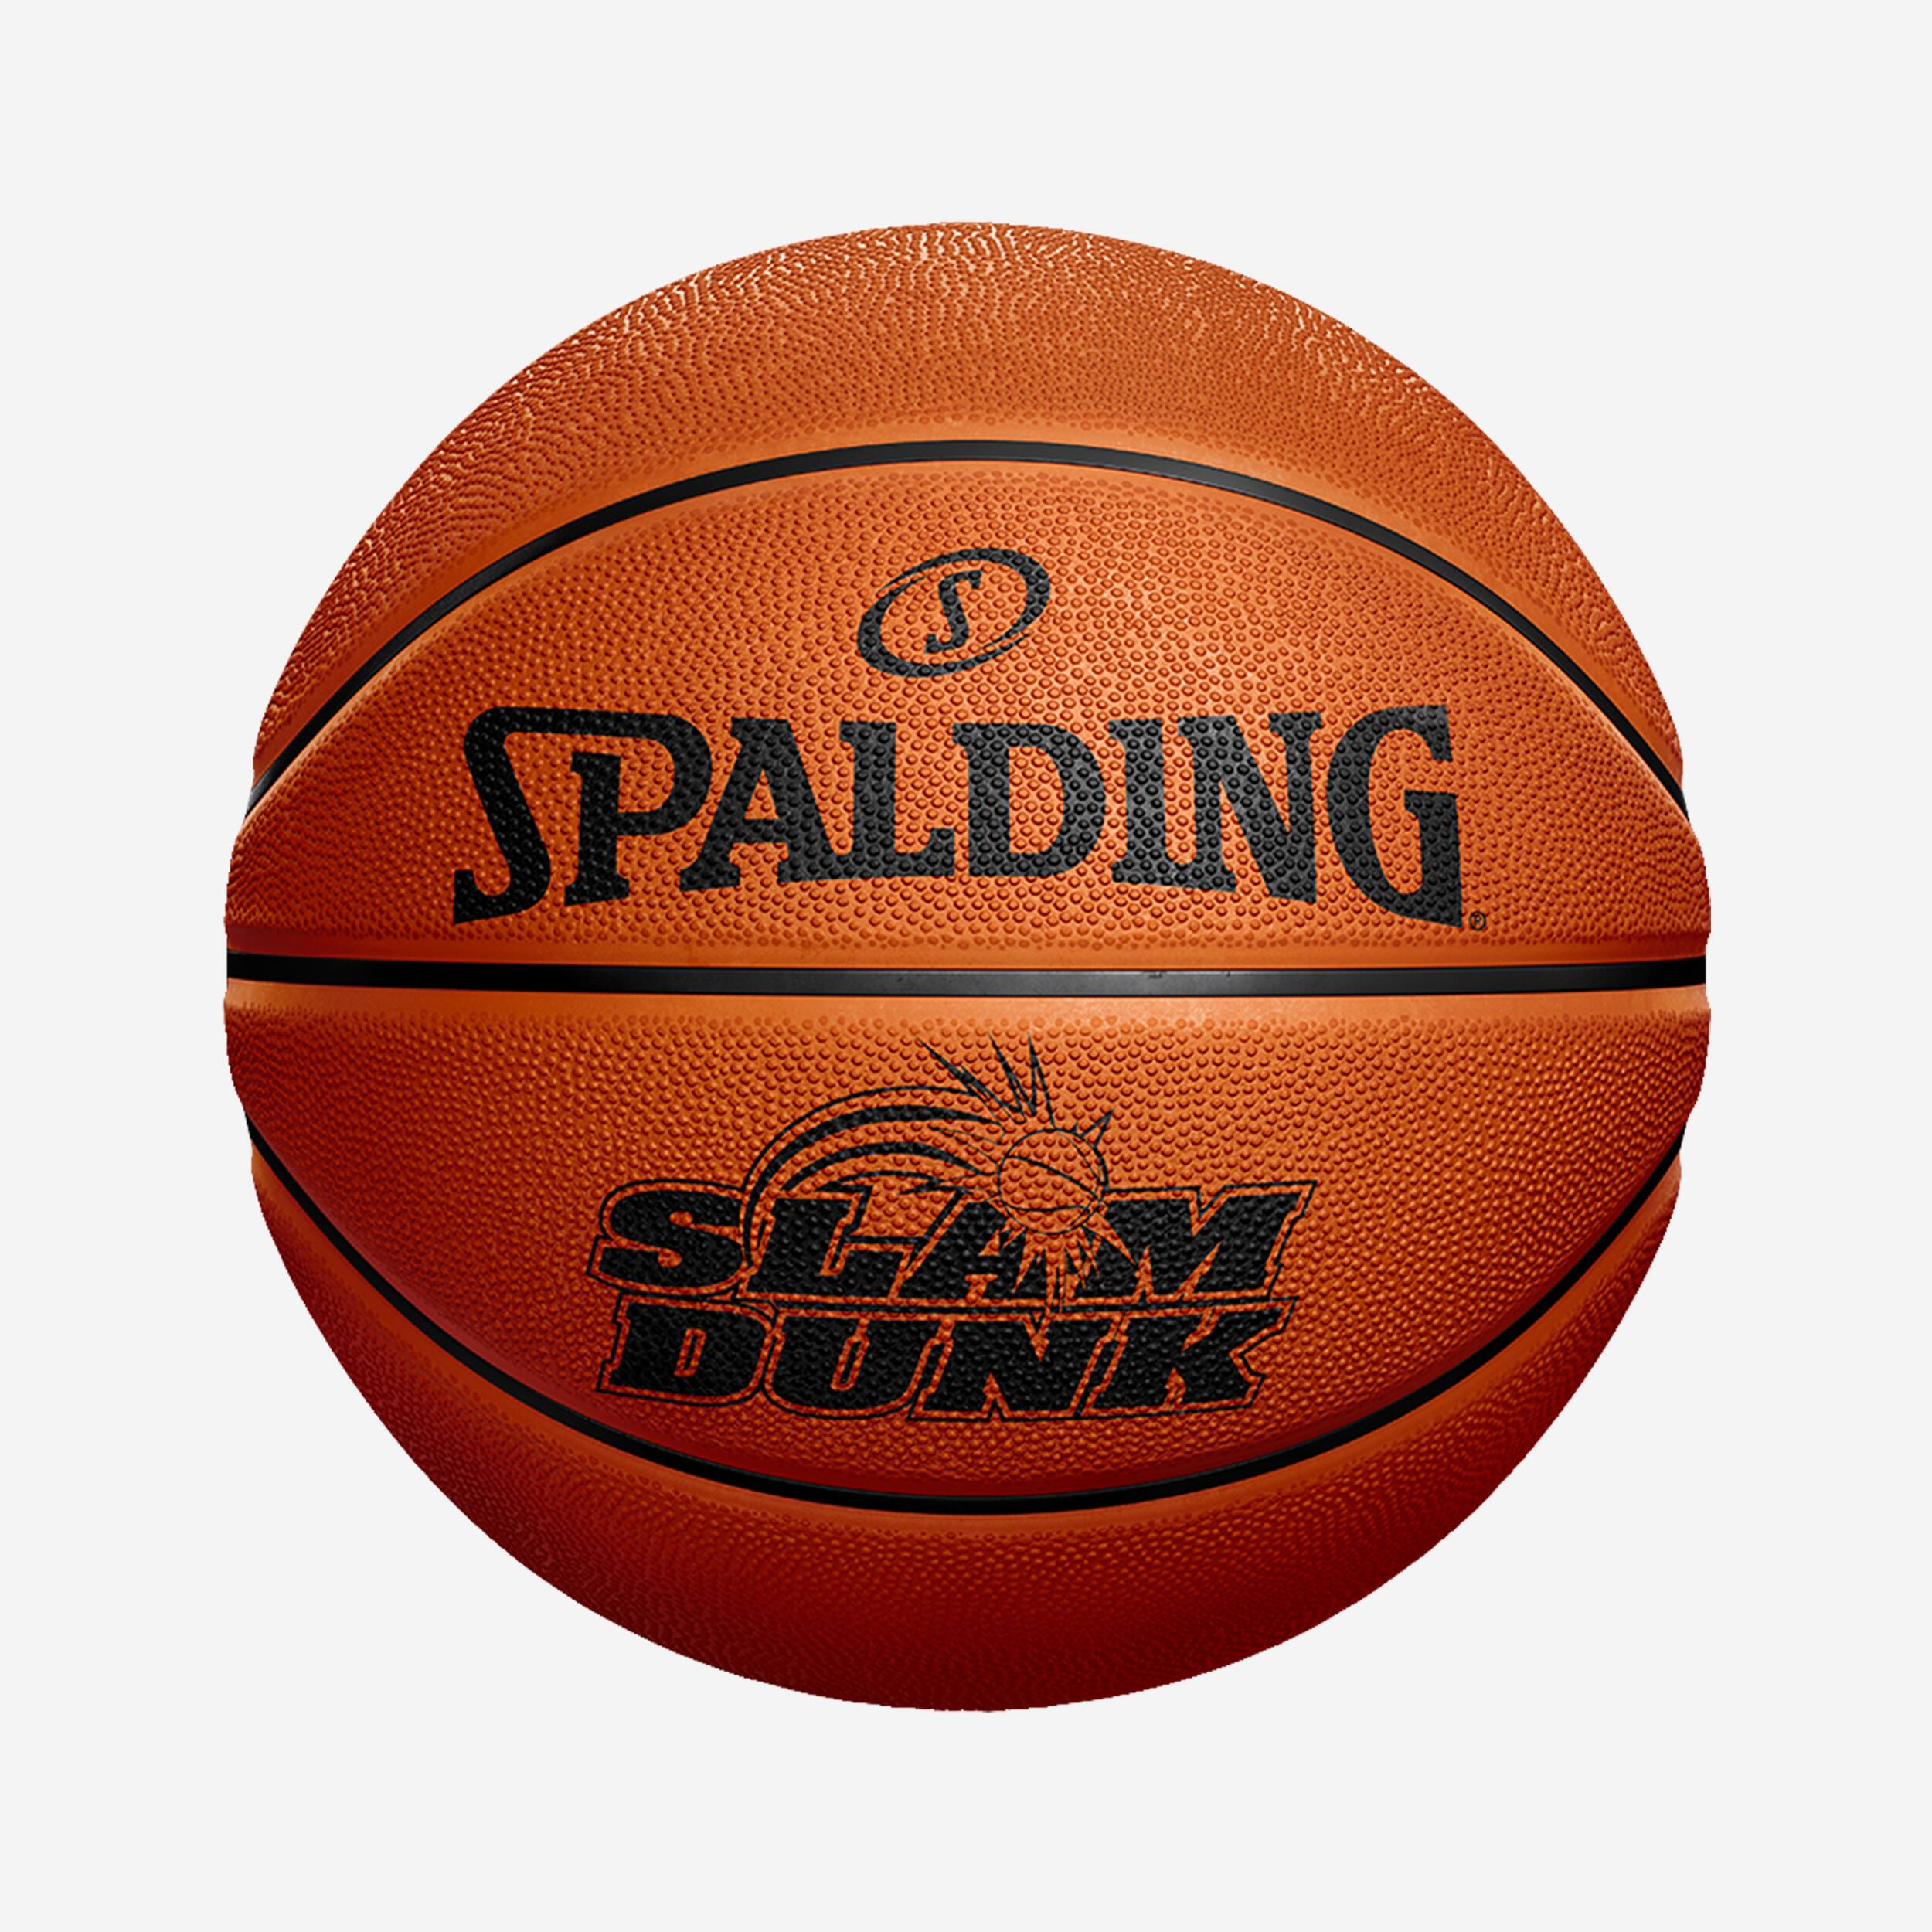 SPALDING Ballon De Basketball Taille 7 - Slam Dunk Spalding Orange